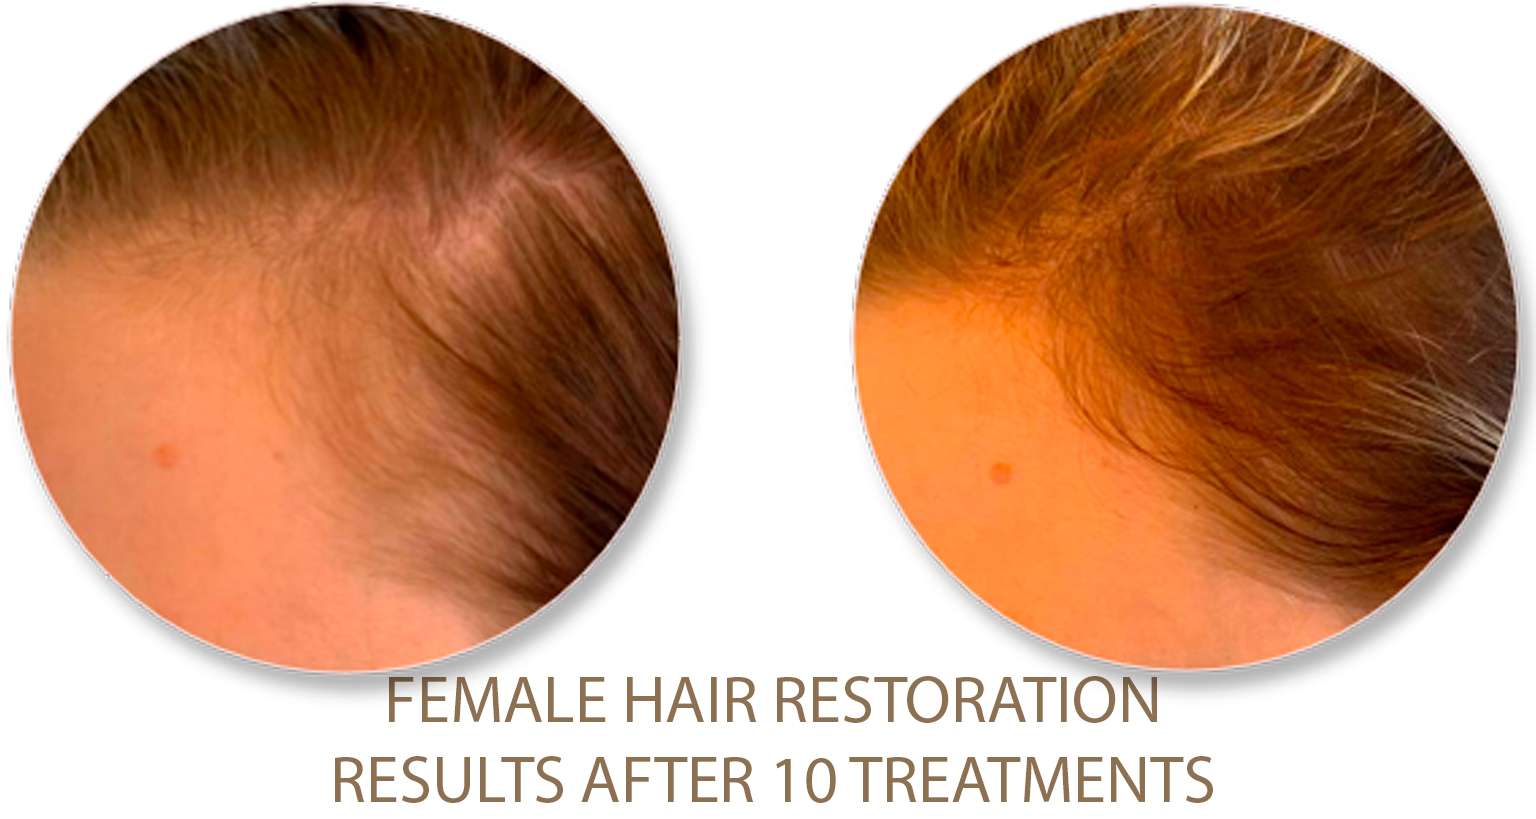 Female-hair-restoration